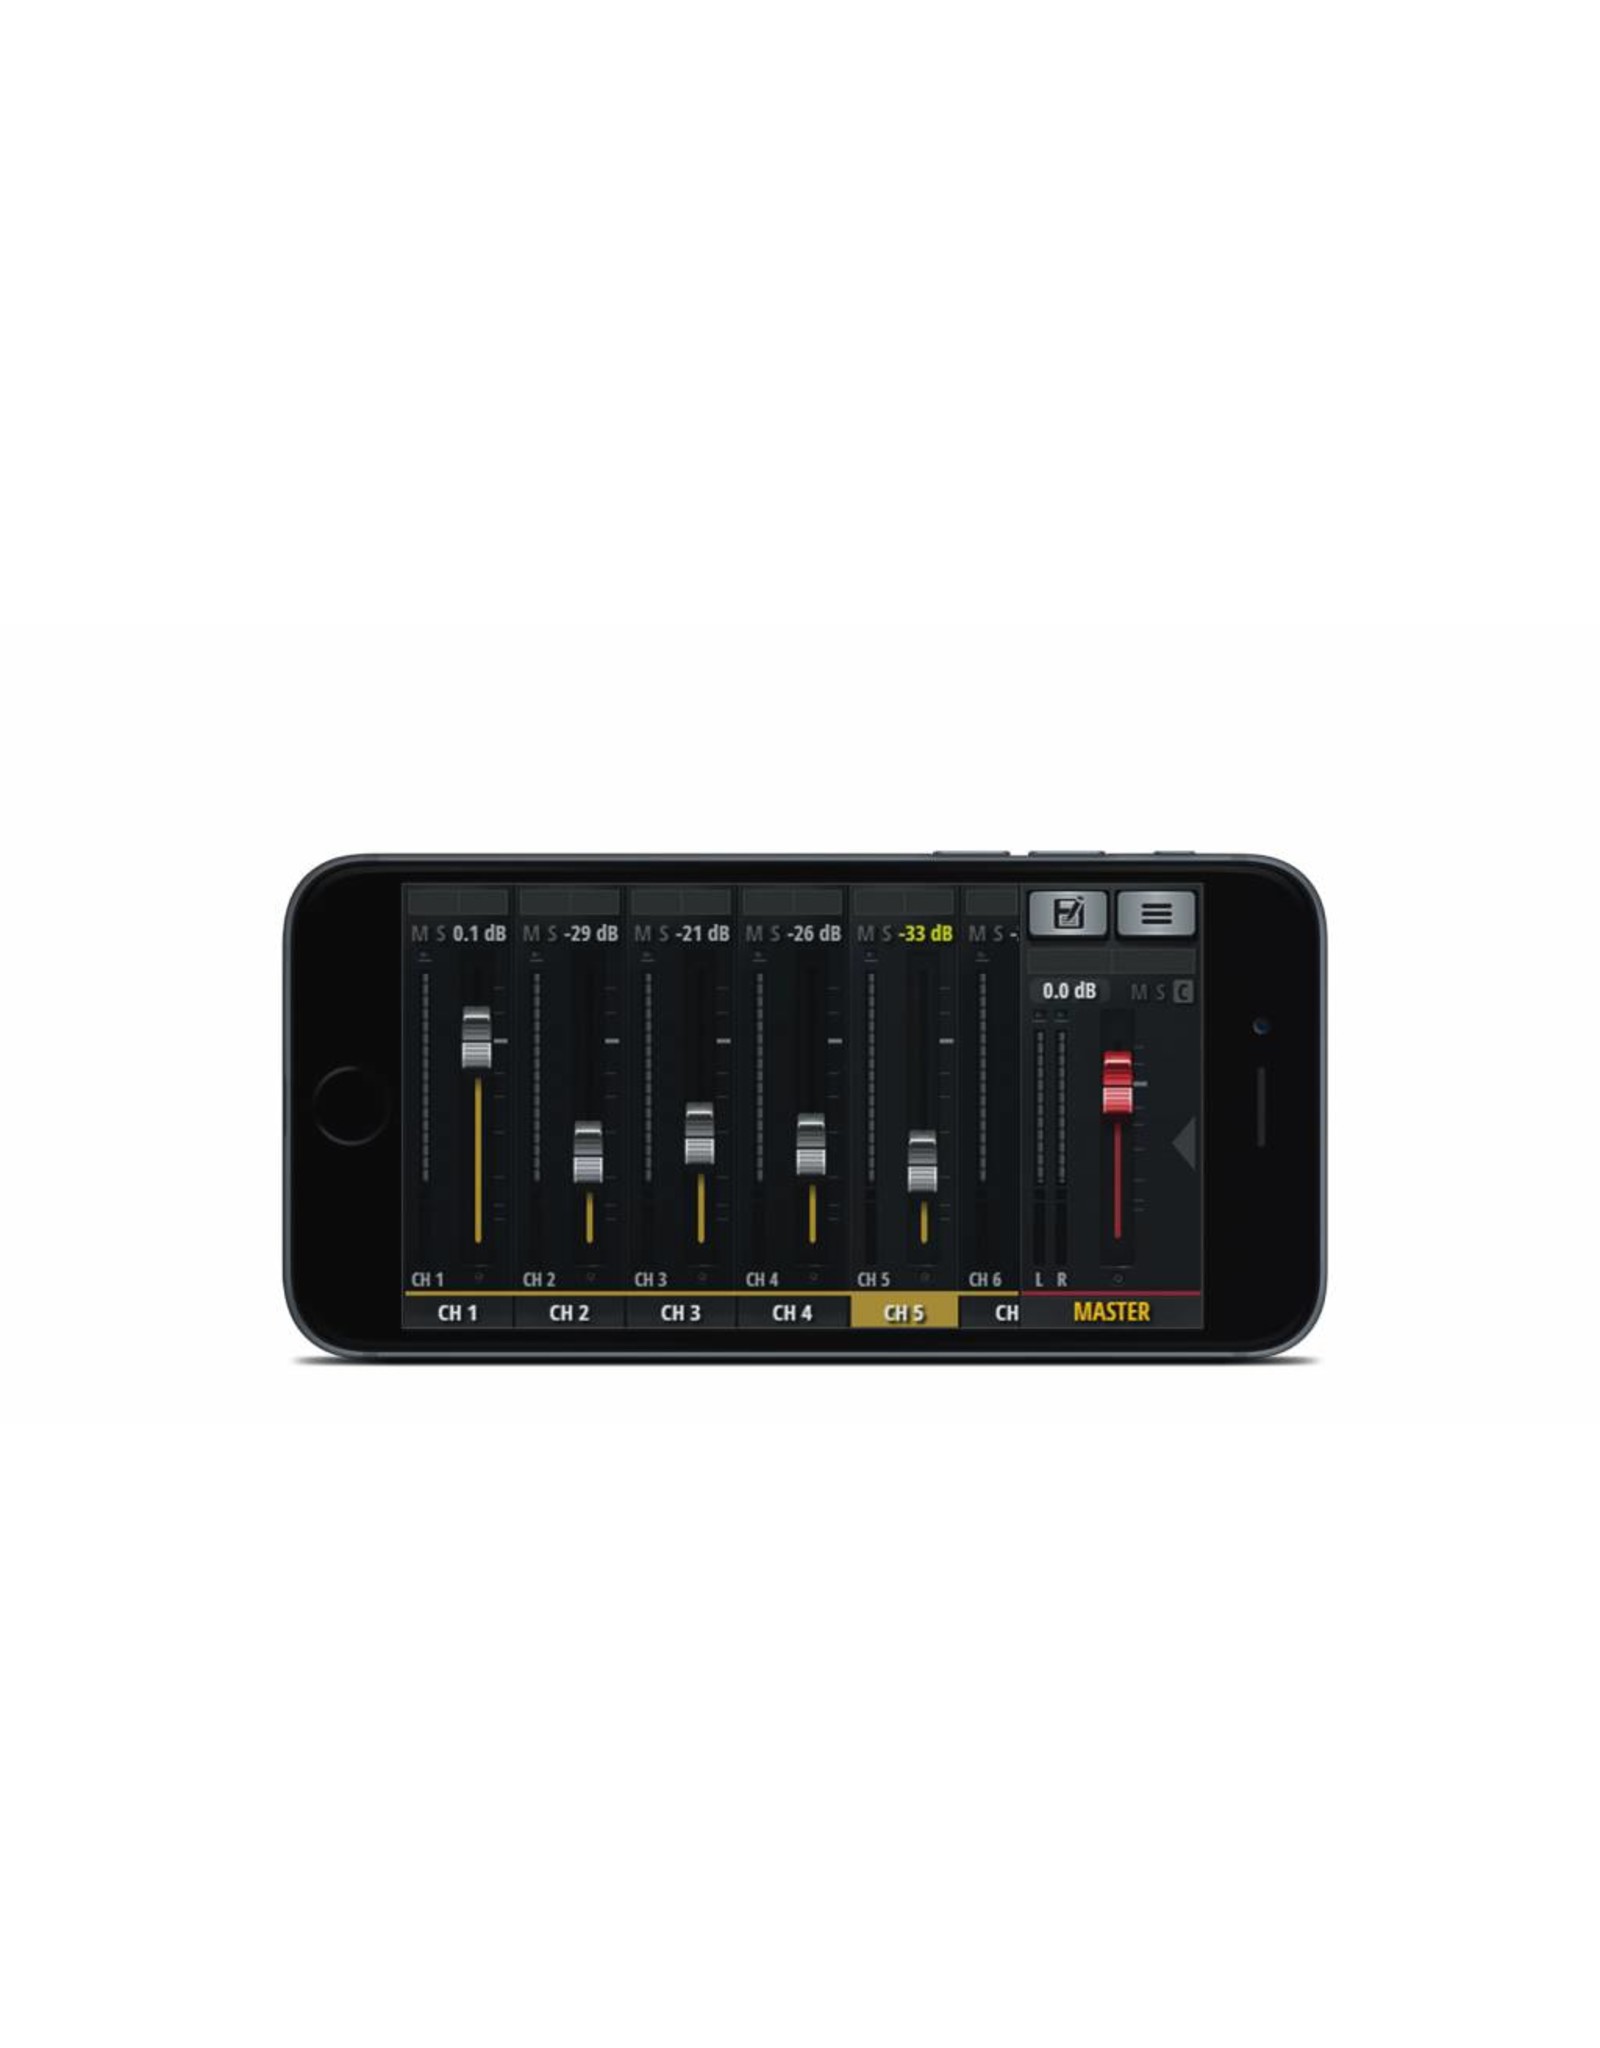 Soundcraft Sound digitale Mischer UI12